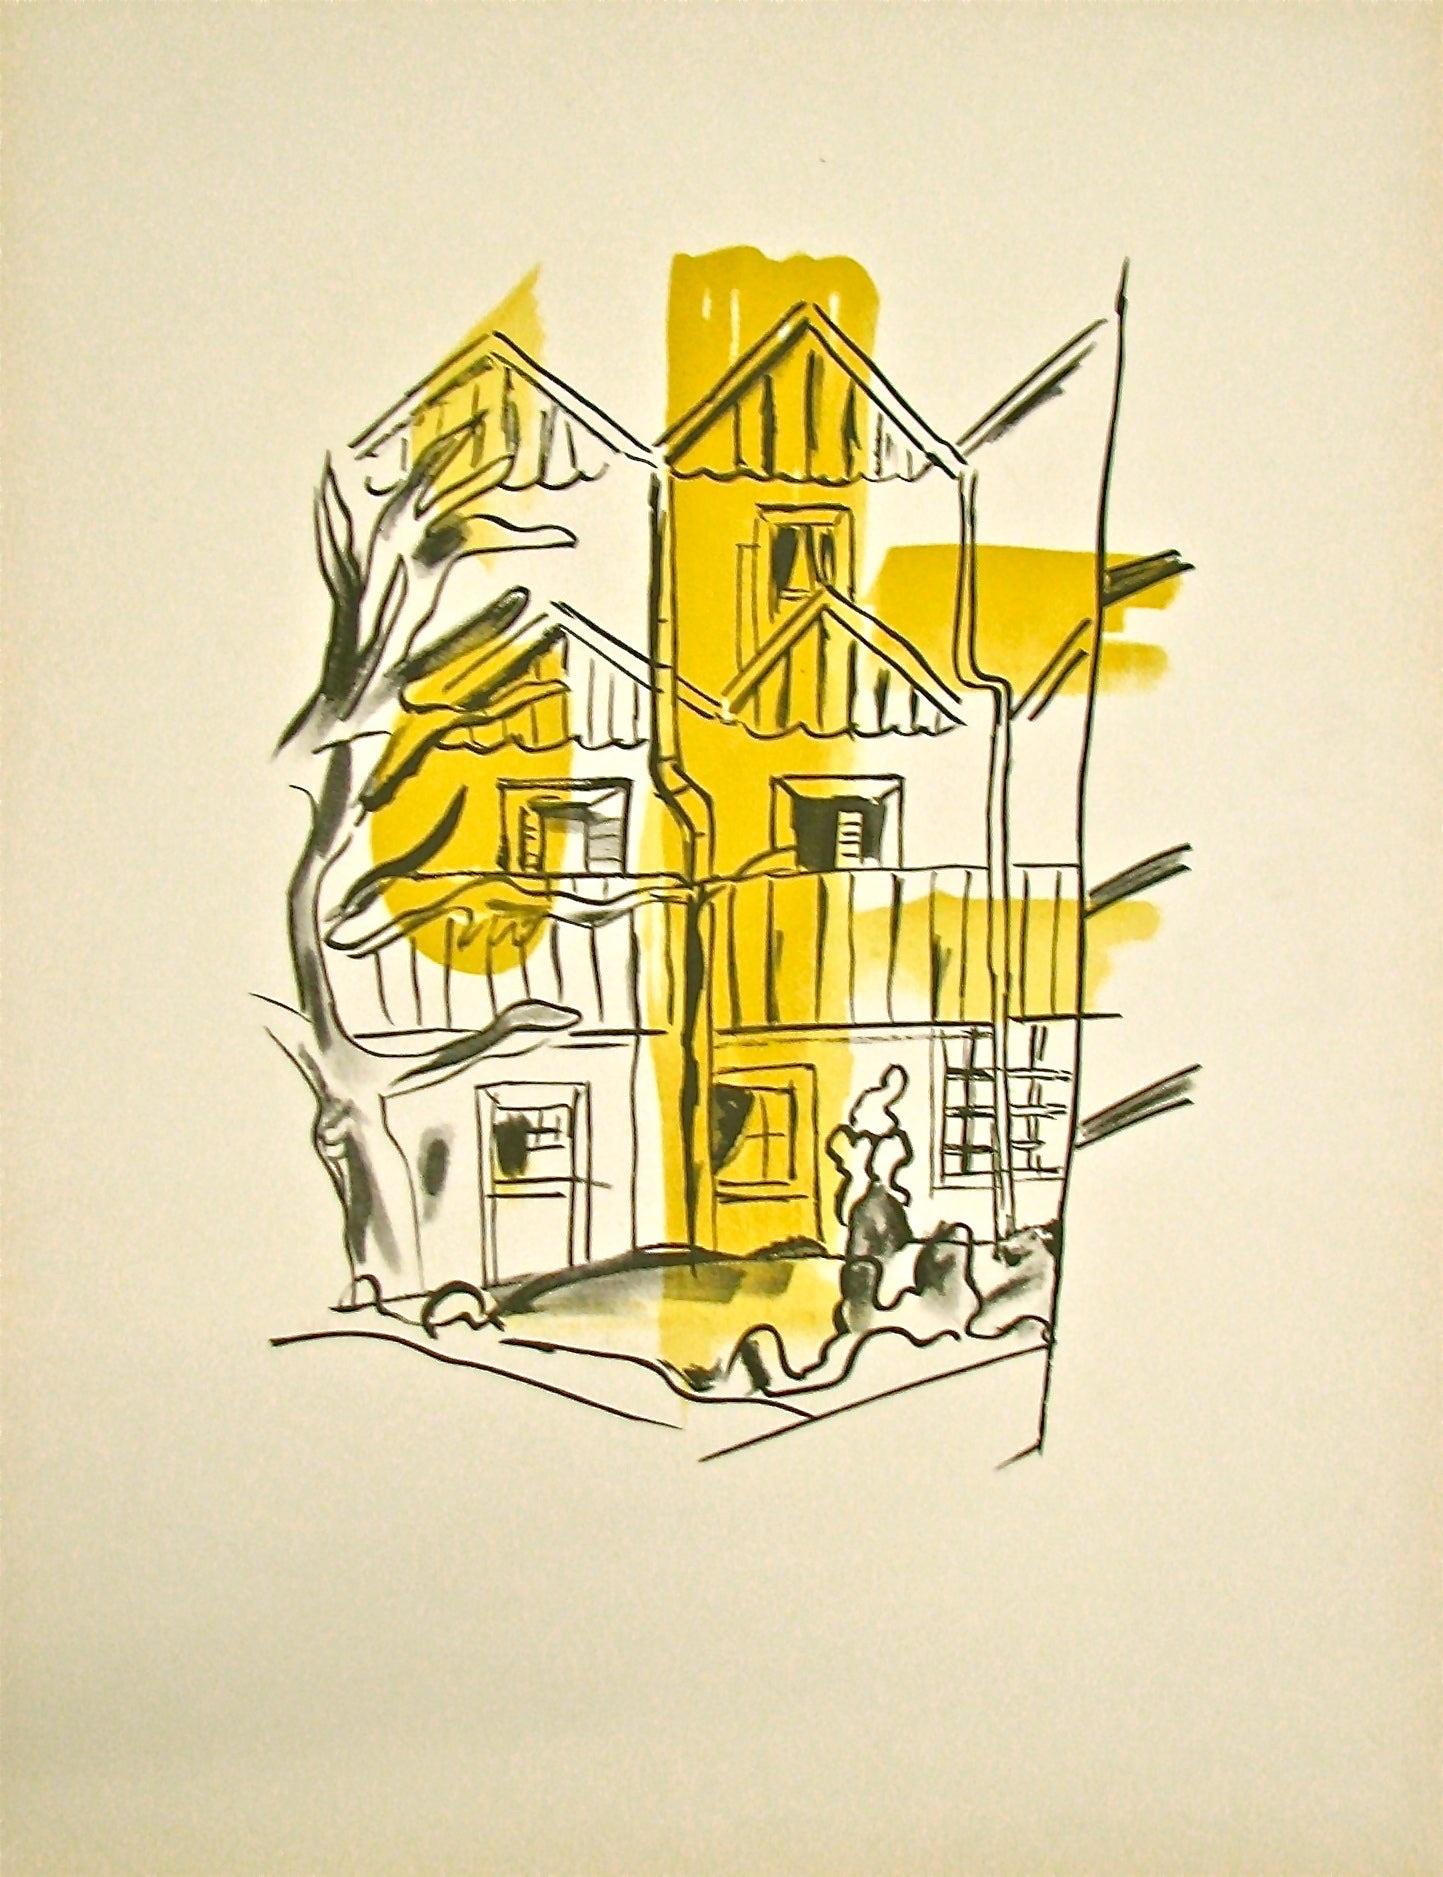 La Ruche - "La Ville" (after) Fernand Leger, 1959 - Print by Fernand Léger